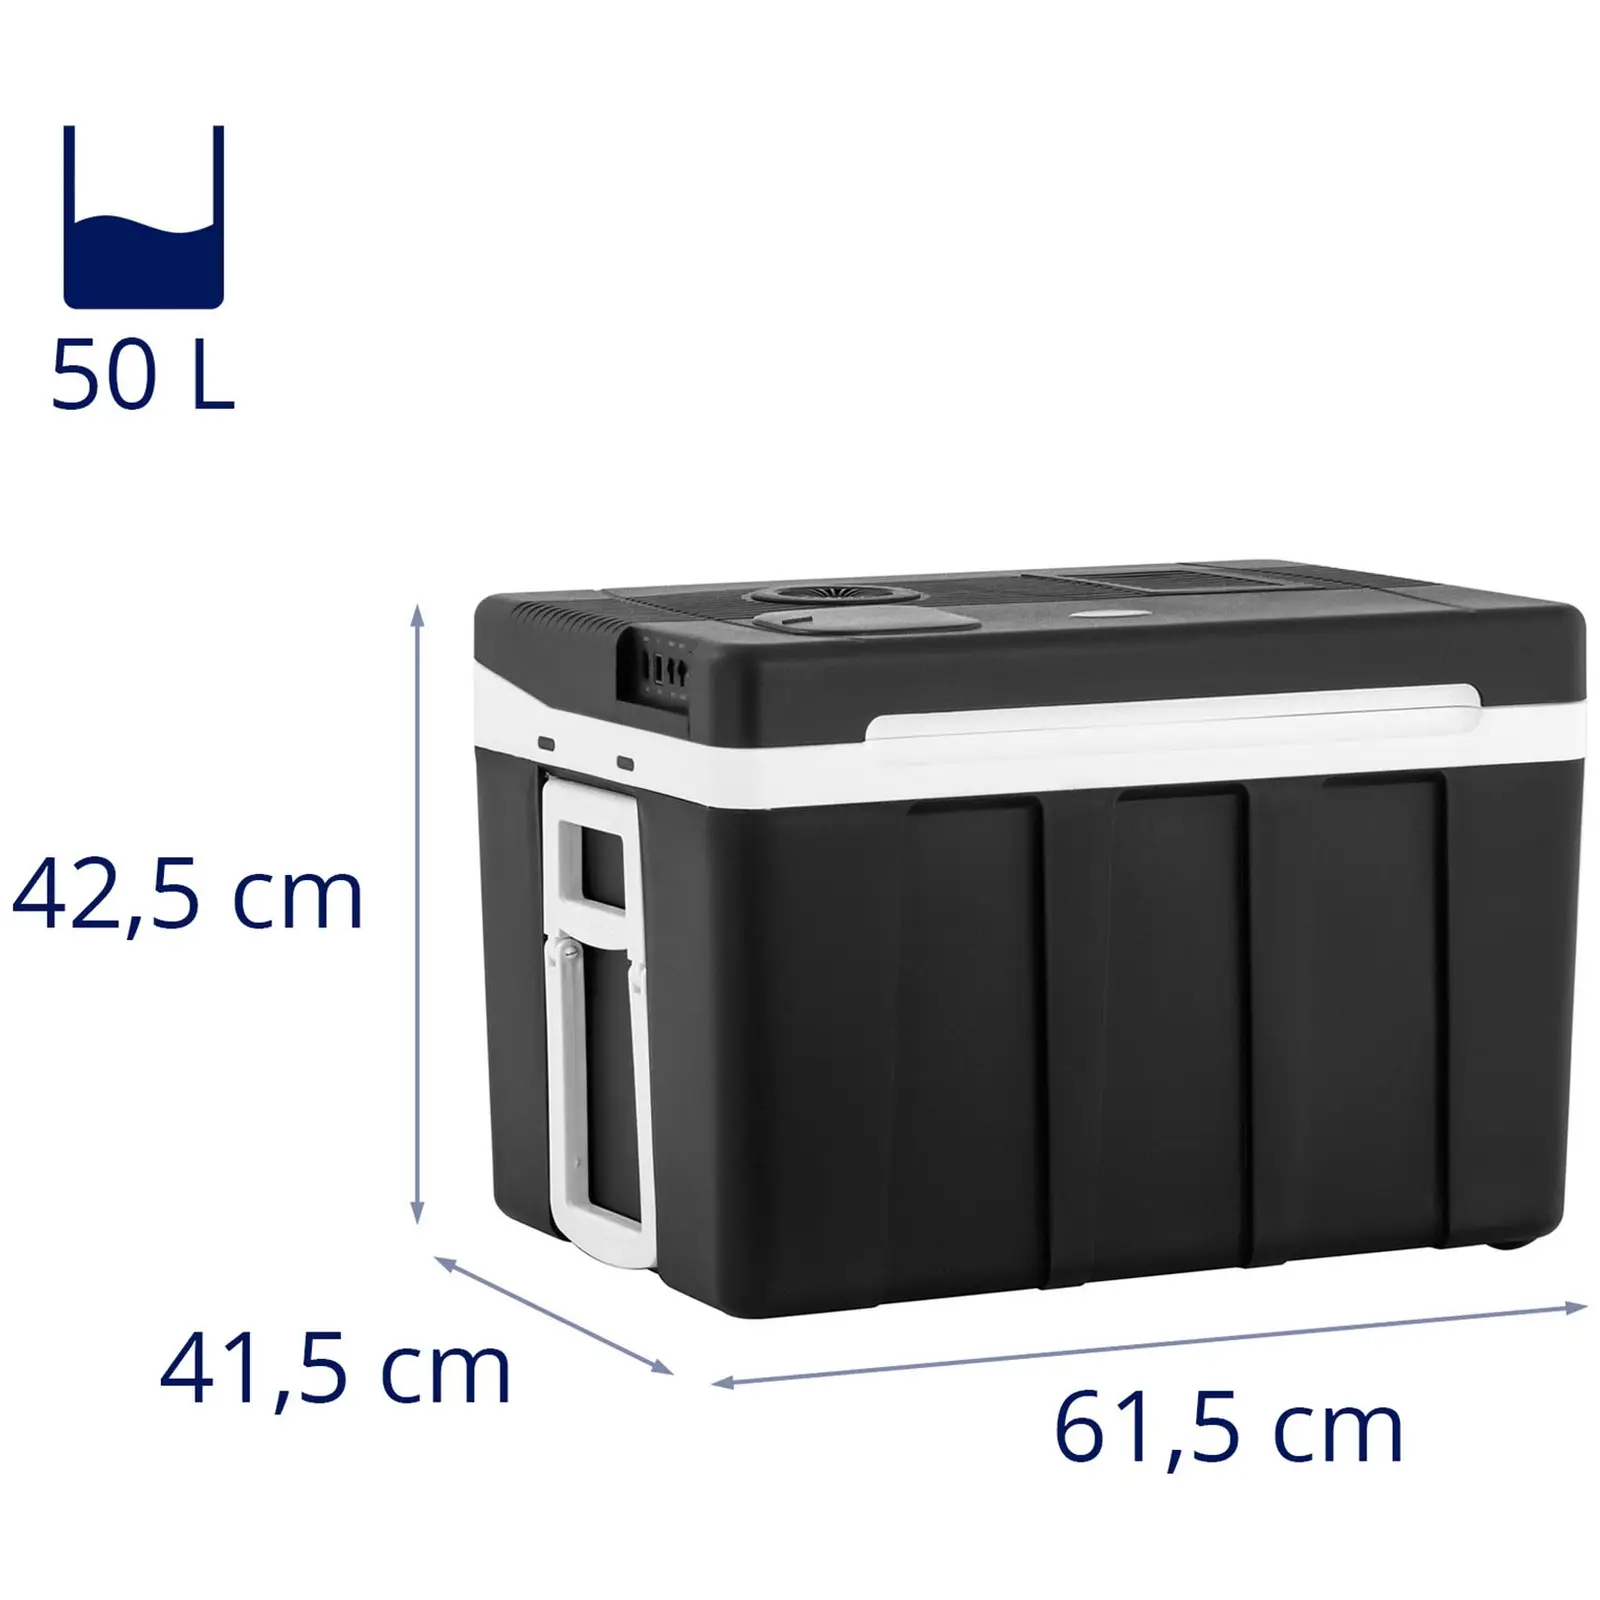 Електрическа хладилна чанта - 2 в 1 устройство с функция за затопляне - 50 л